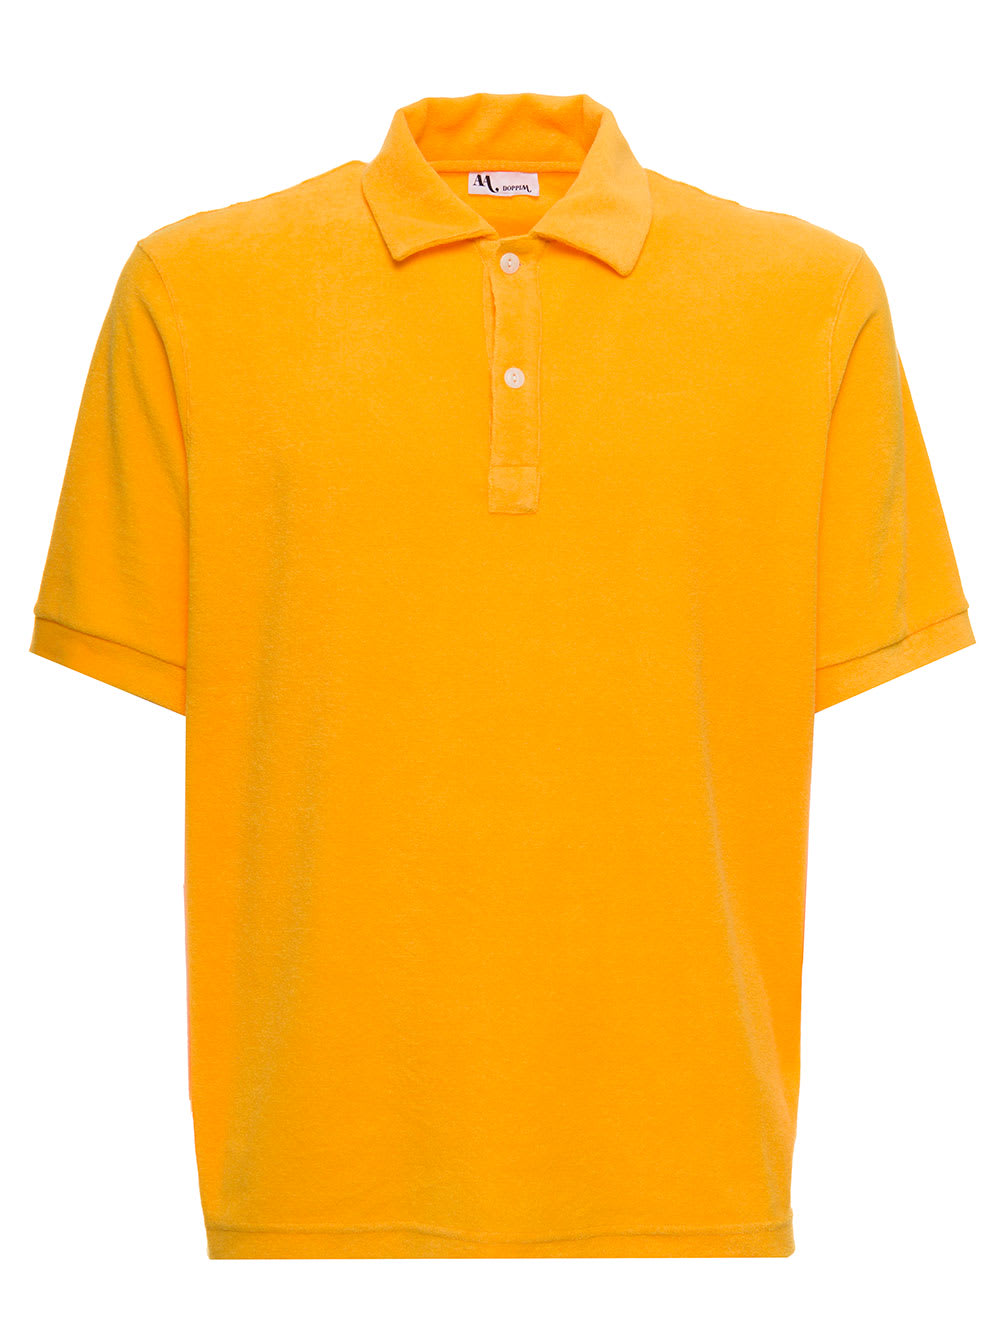 Doppiaa Mans Yellow Cotton Terry Polo Shirt